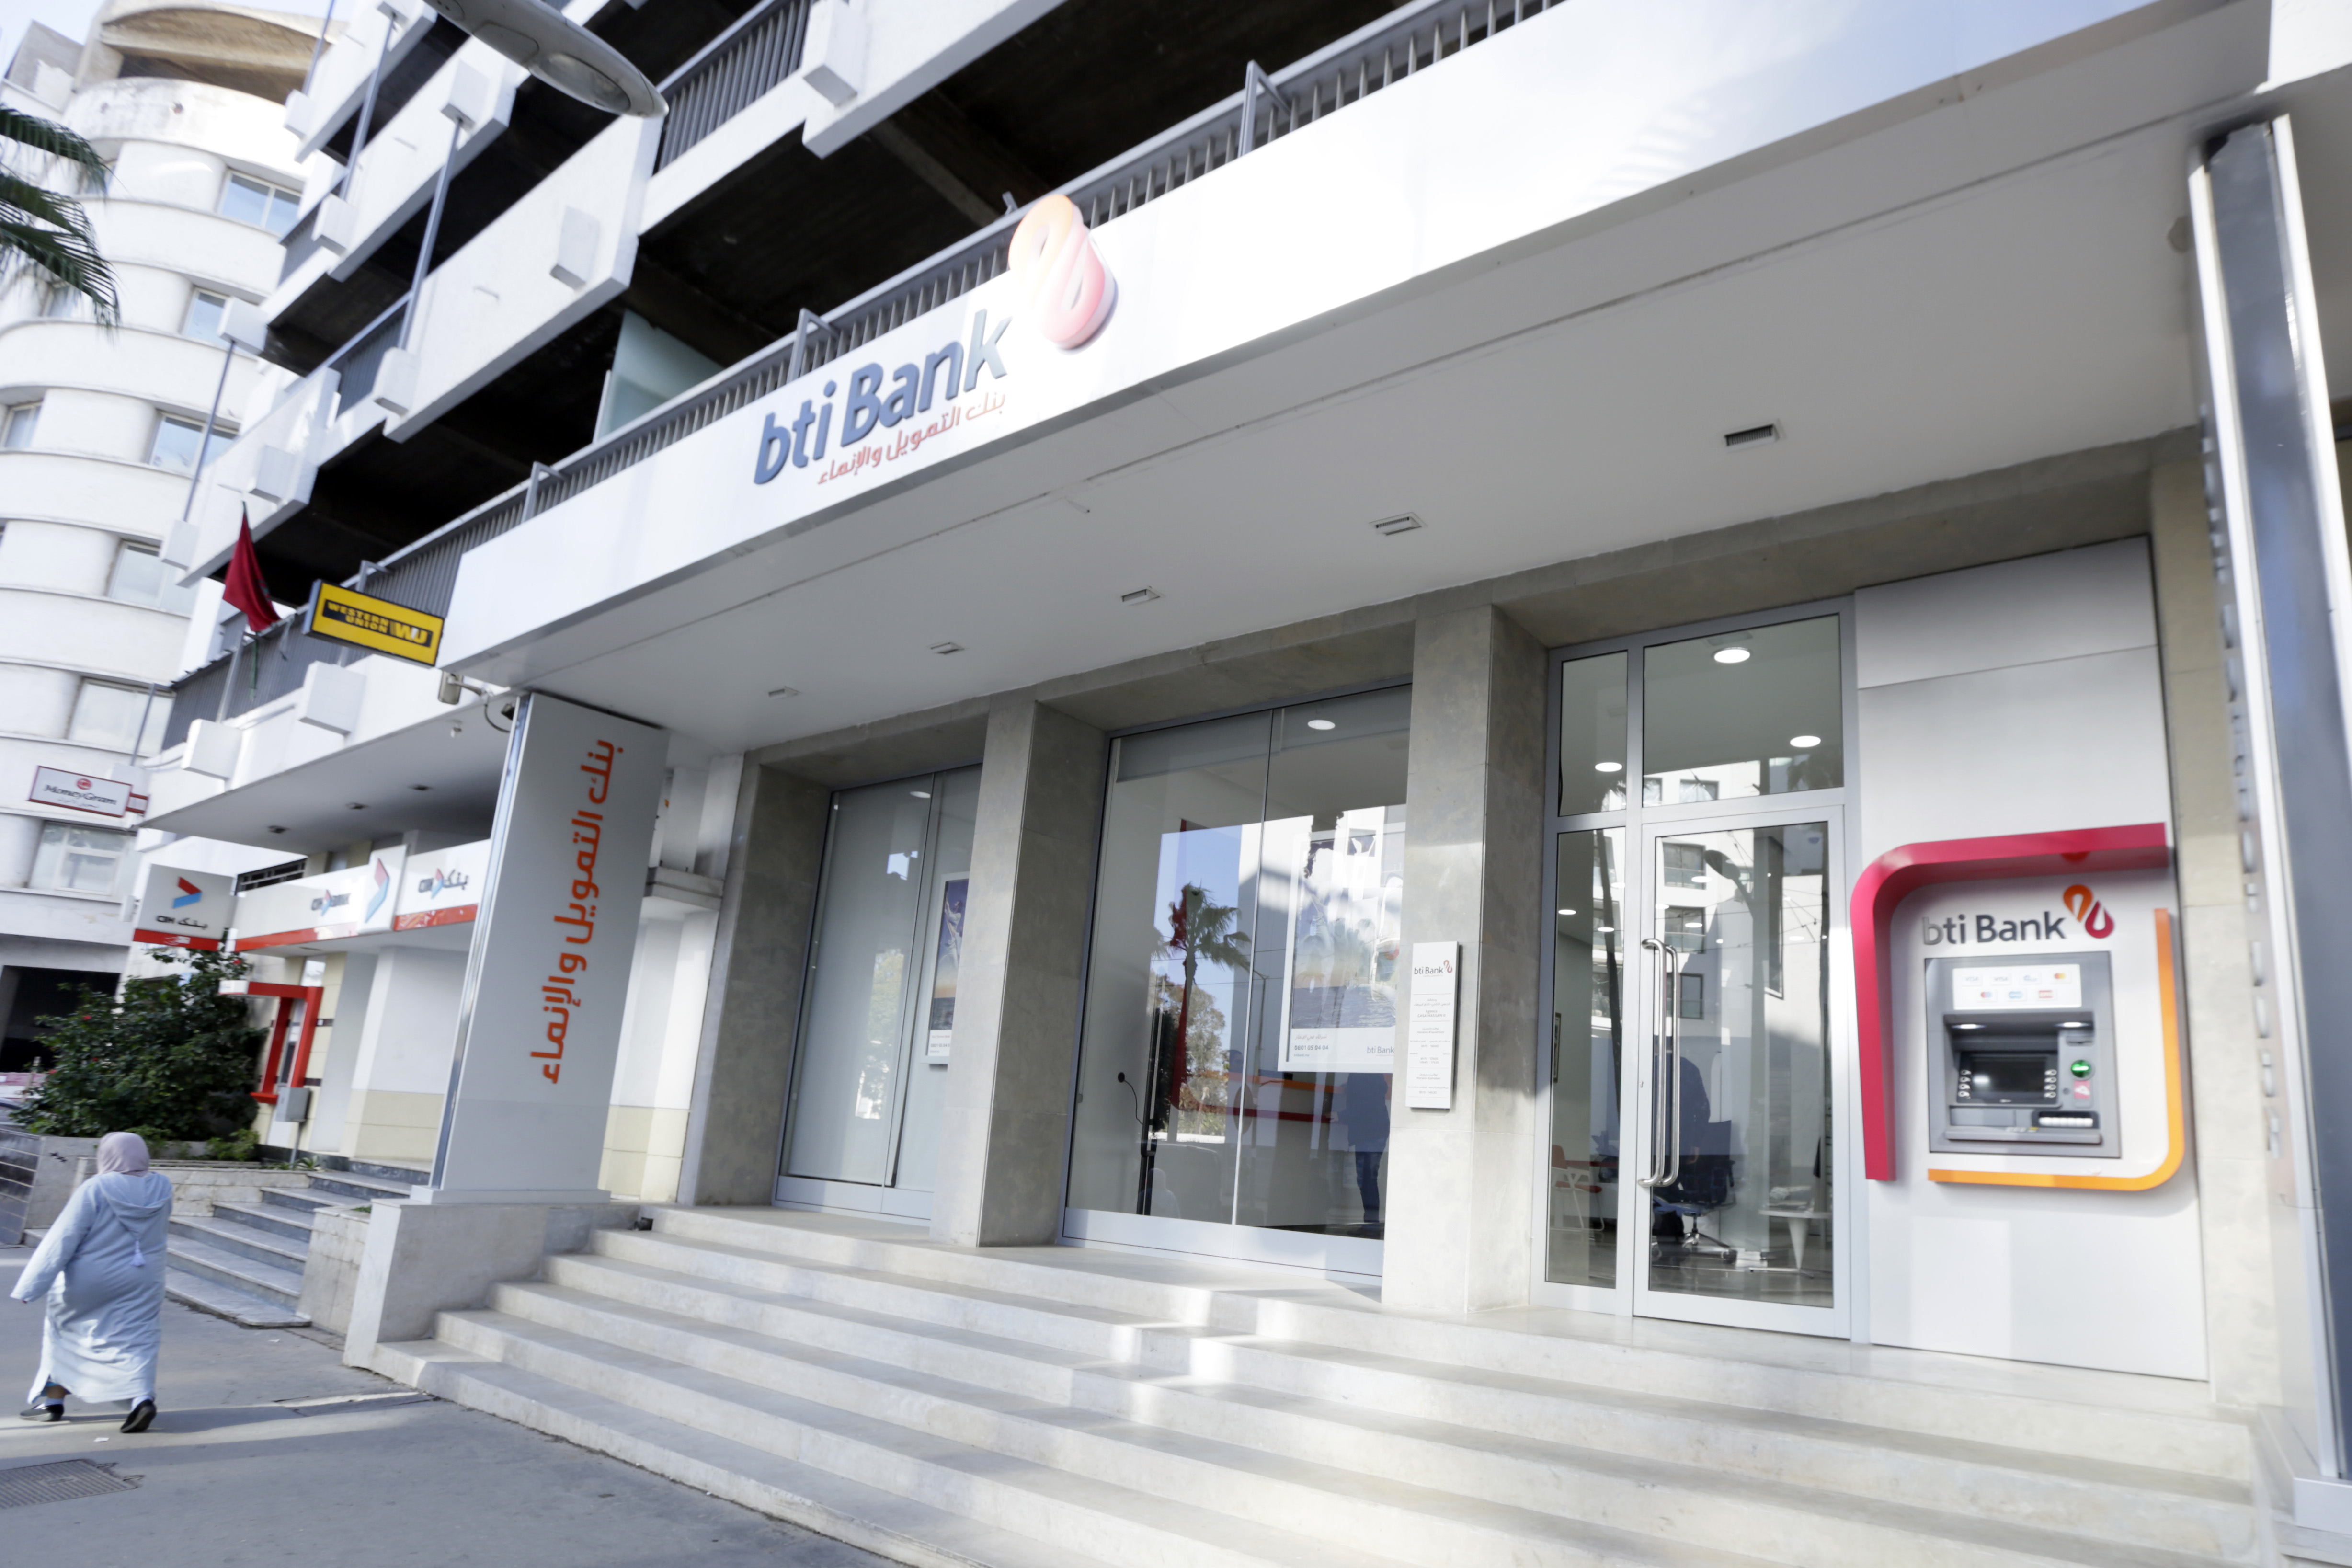 BTI Bank ouvre deux nouvelles agences